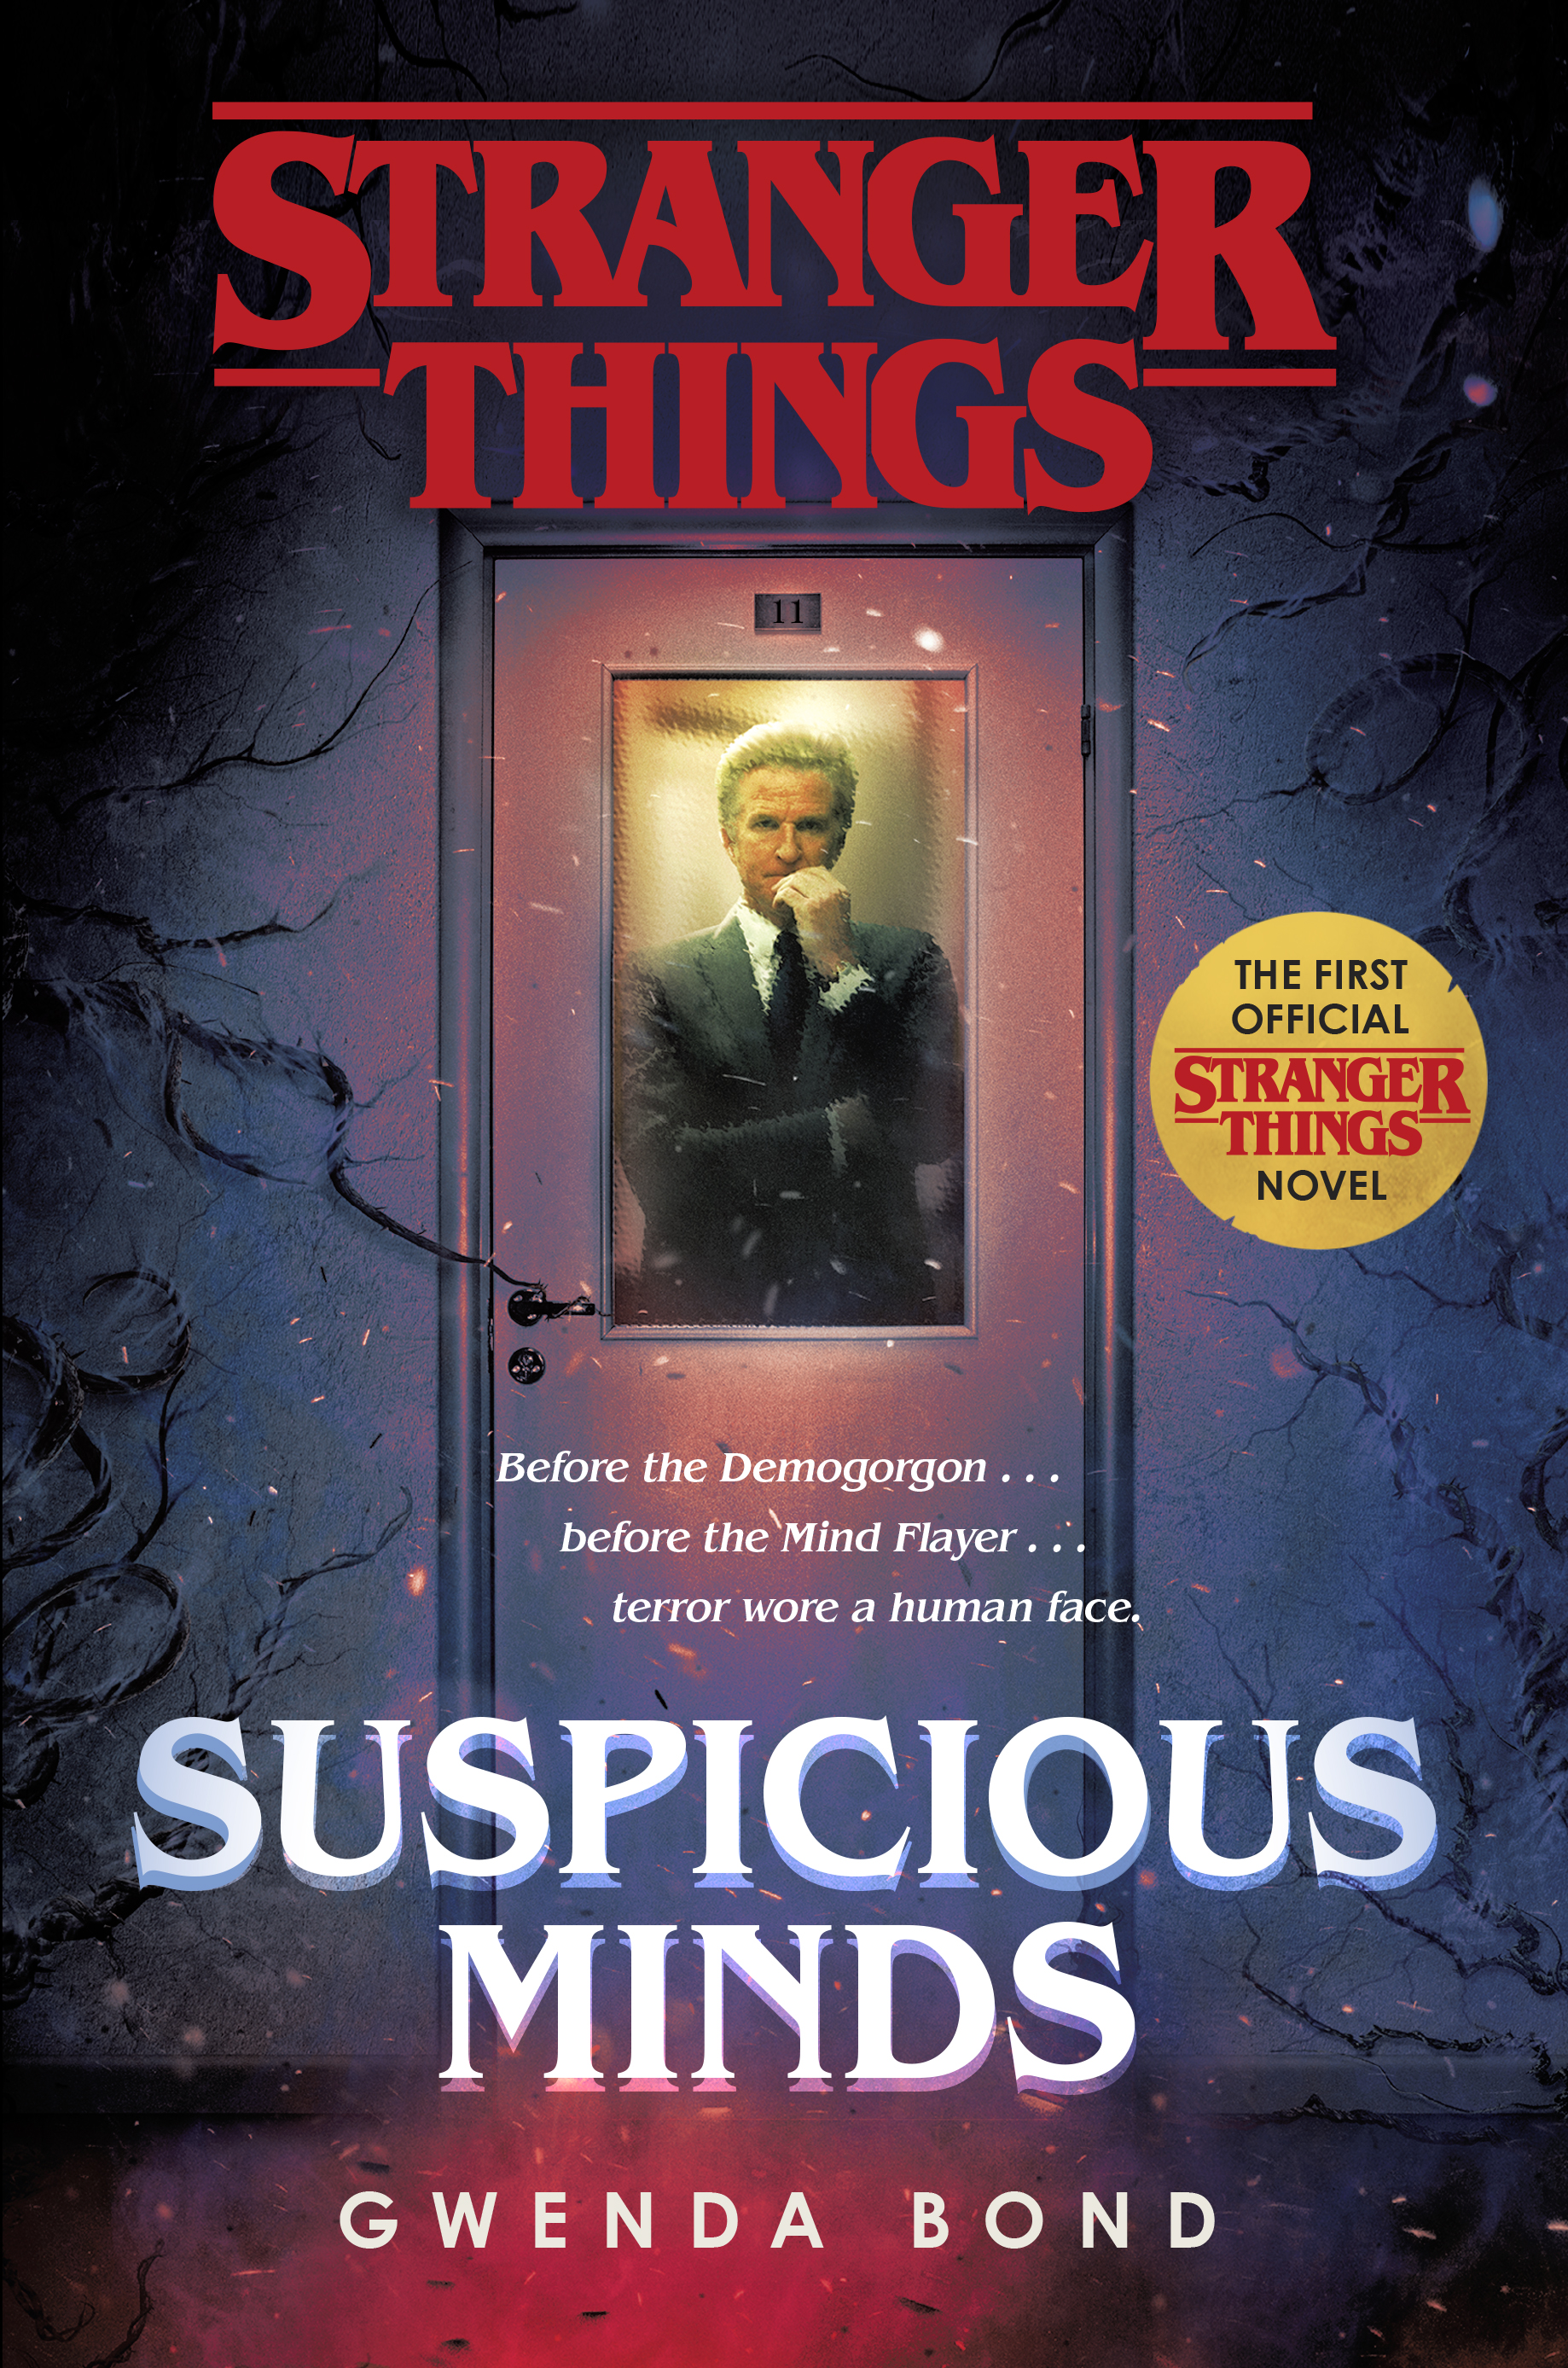 Stranger Things (season 4) - Wikipedia